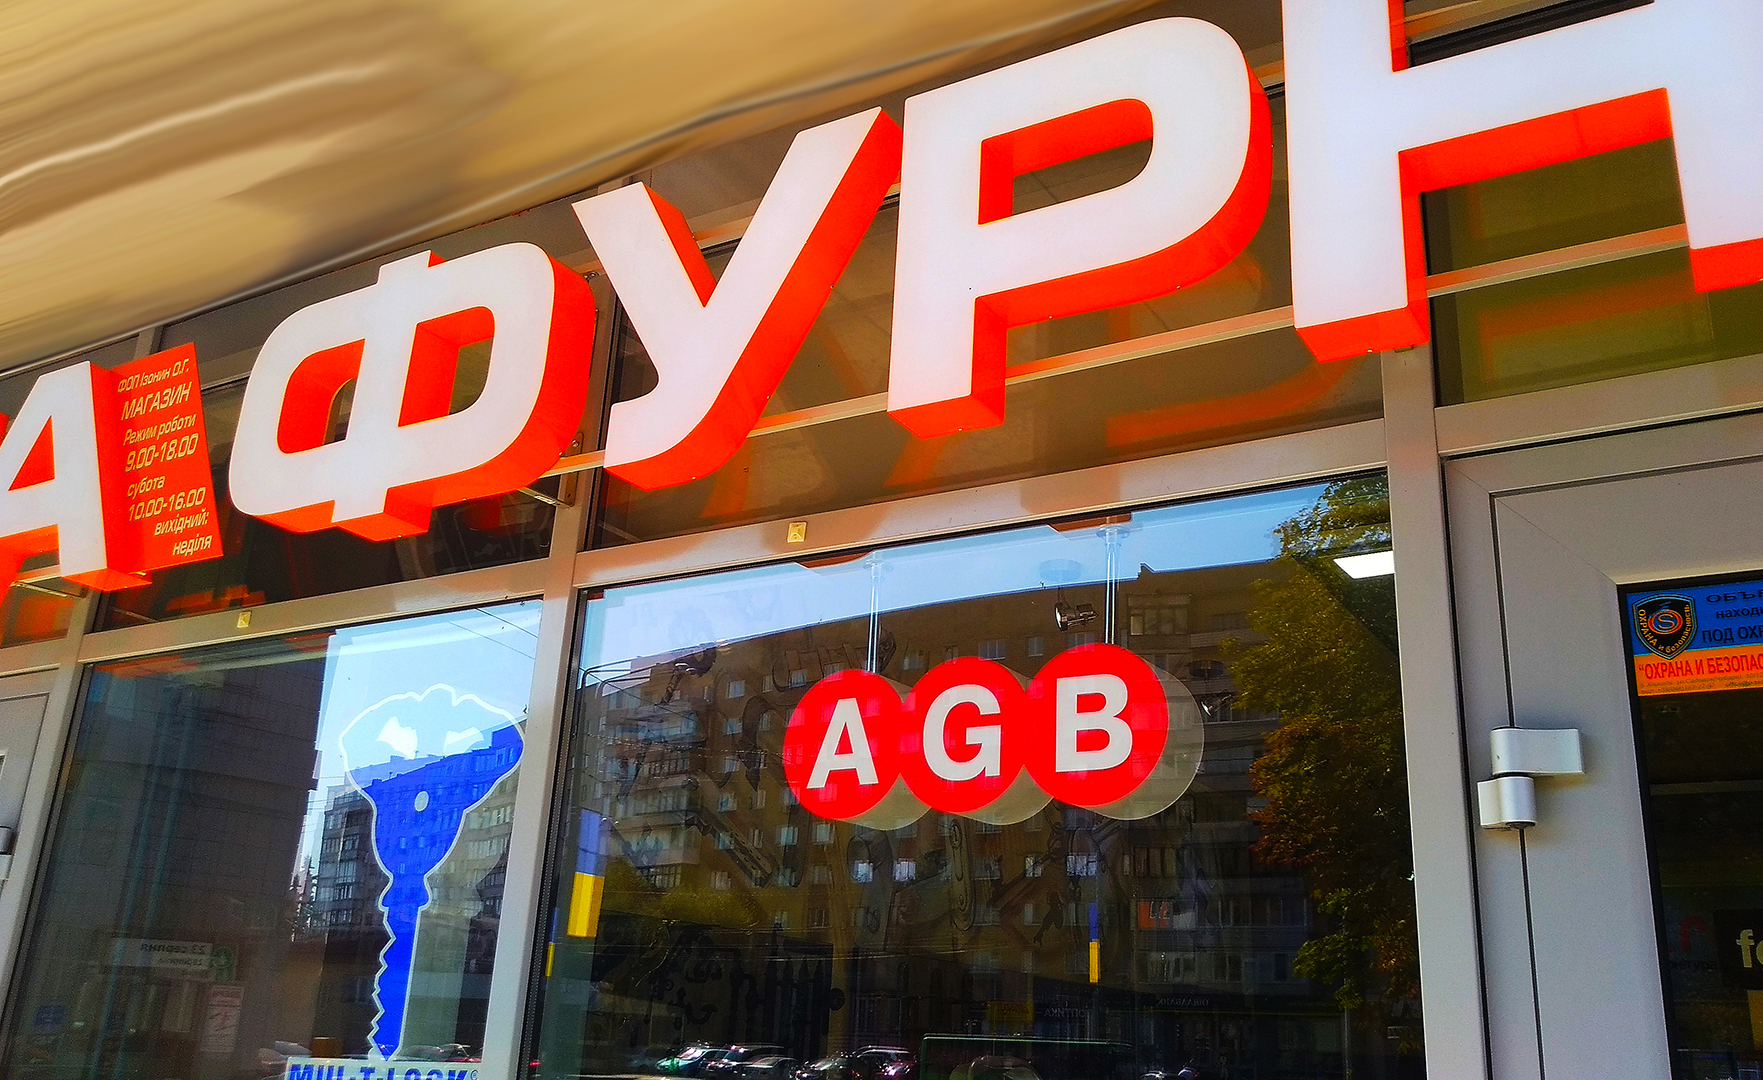 Комплексное оформление световой рекламой фасада ресторана световыми объемными буквами в Харькове